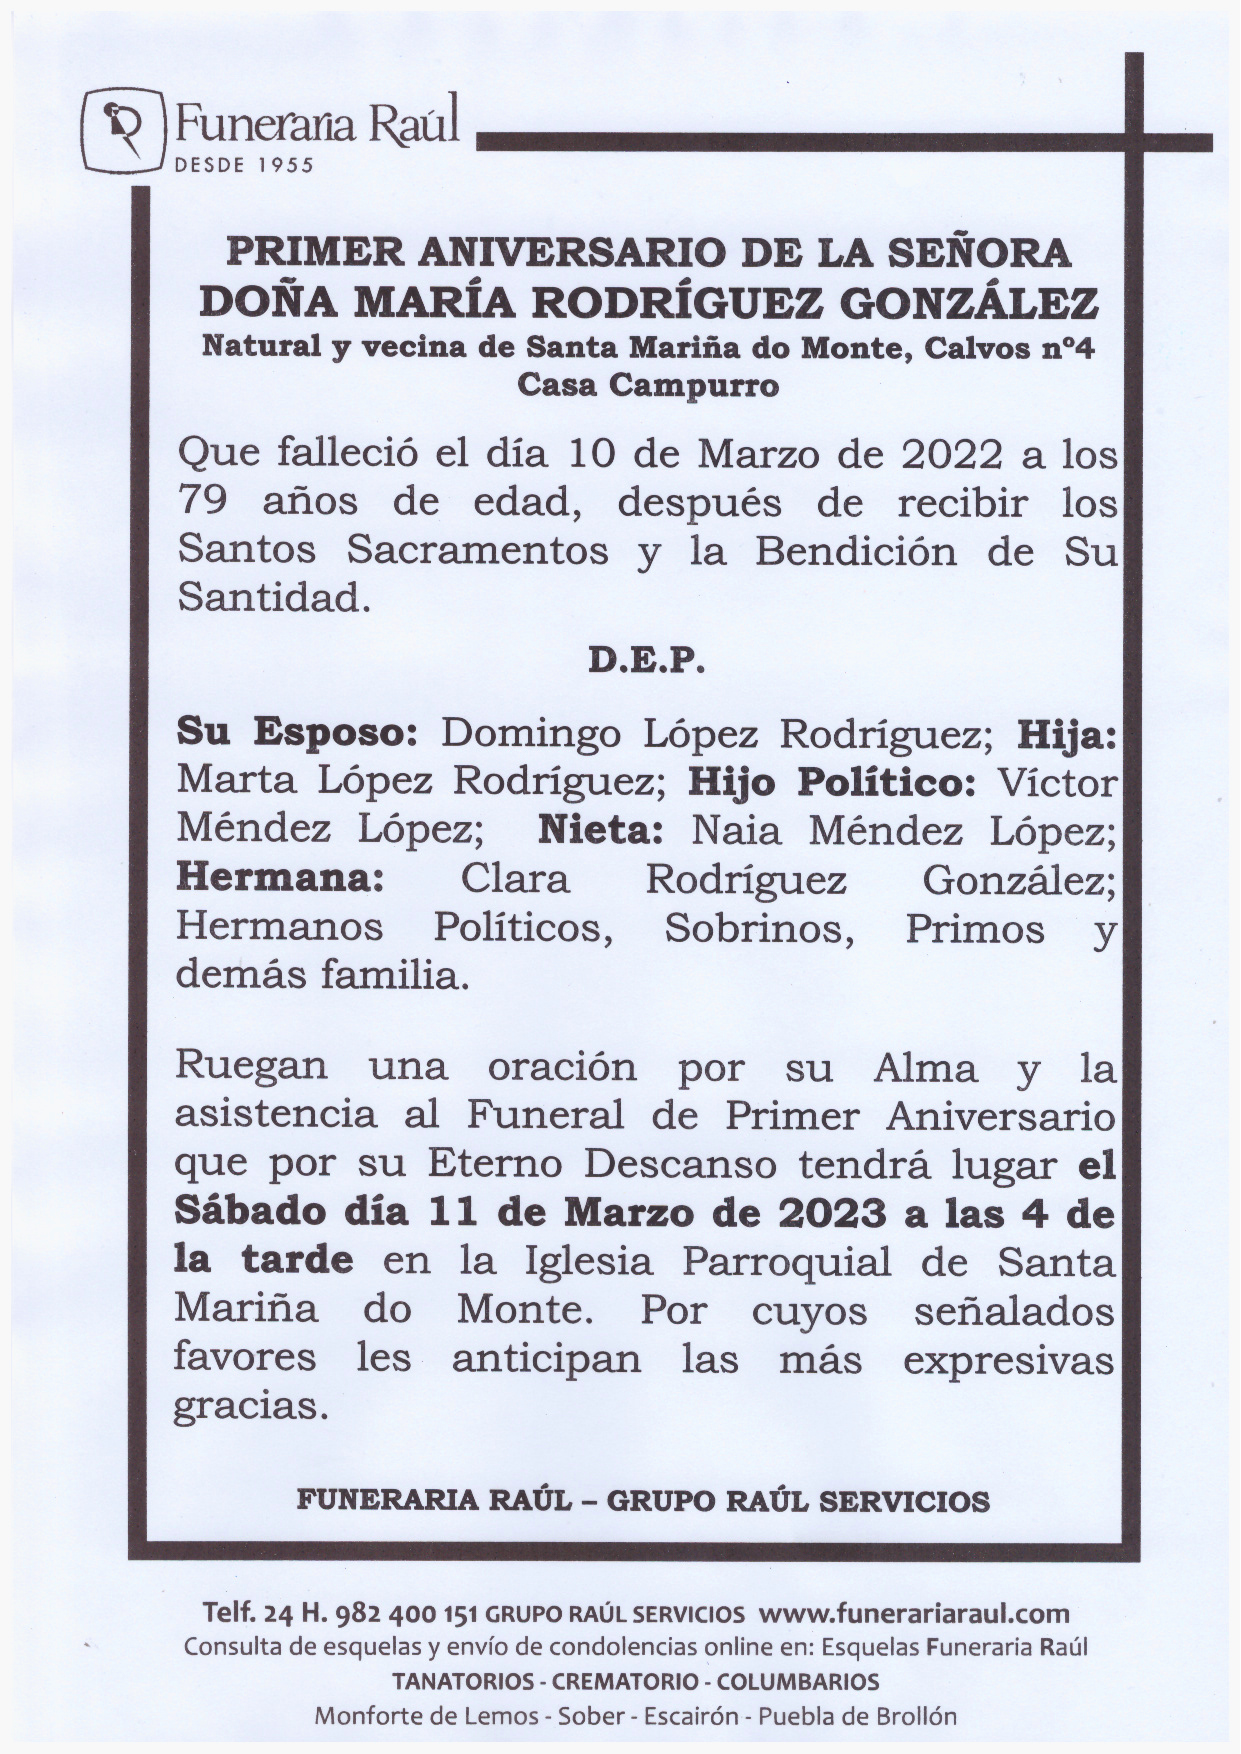 PRIMER ANIVERSARIO DE DOÑA MARIA RODRIGUEZ GONZALEZ